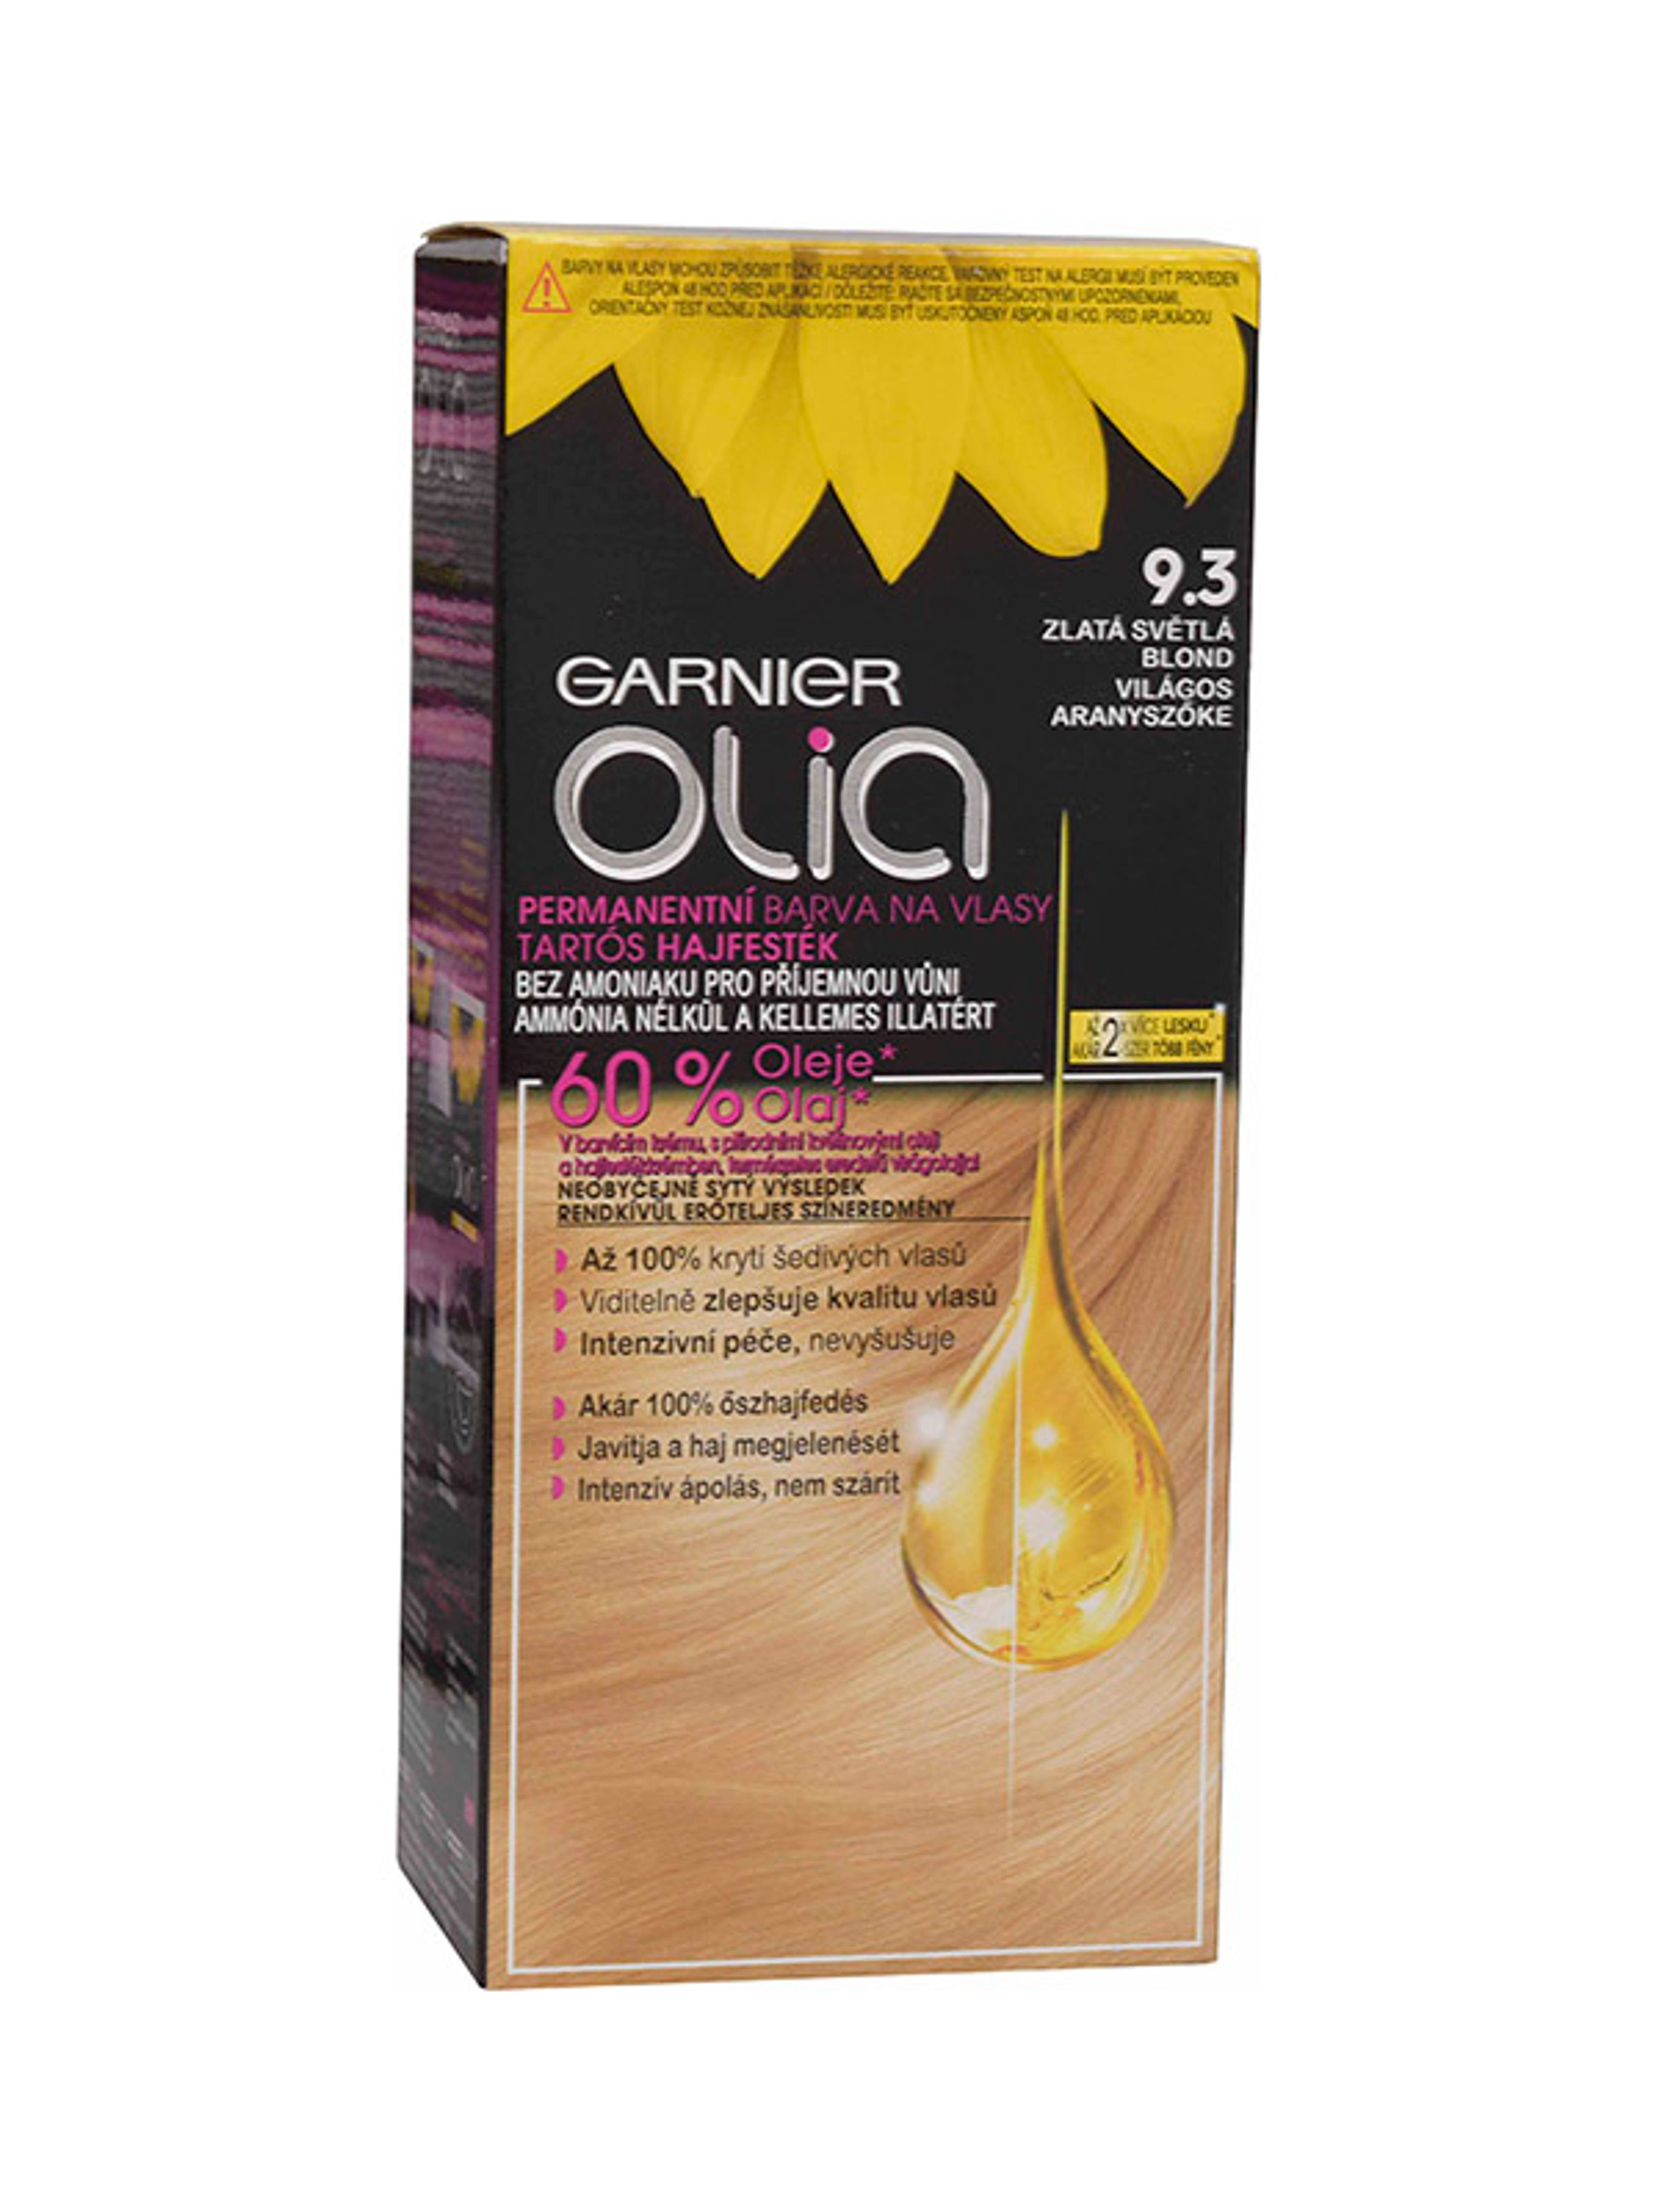 Garnier Olia tartós hajfesték 9.3 Világos aranyszőke - 1 db-2